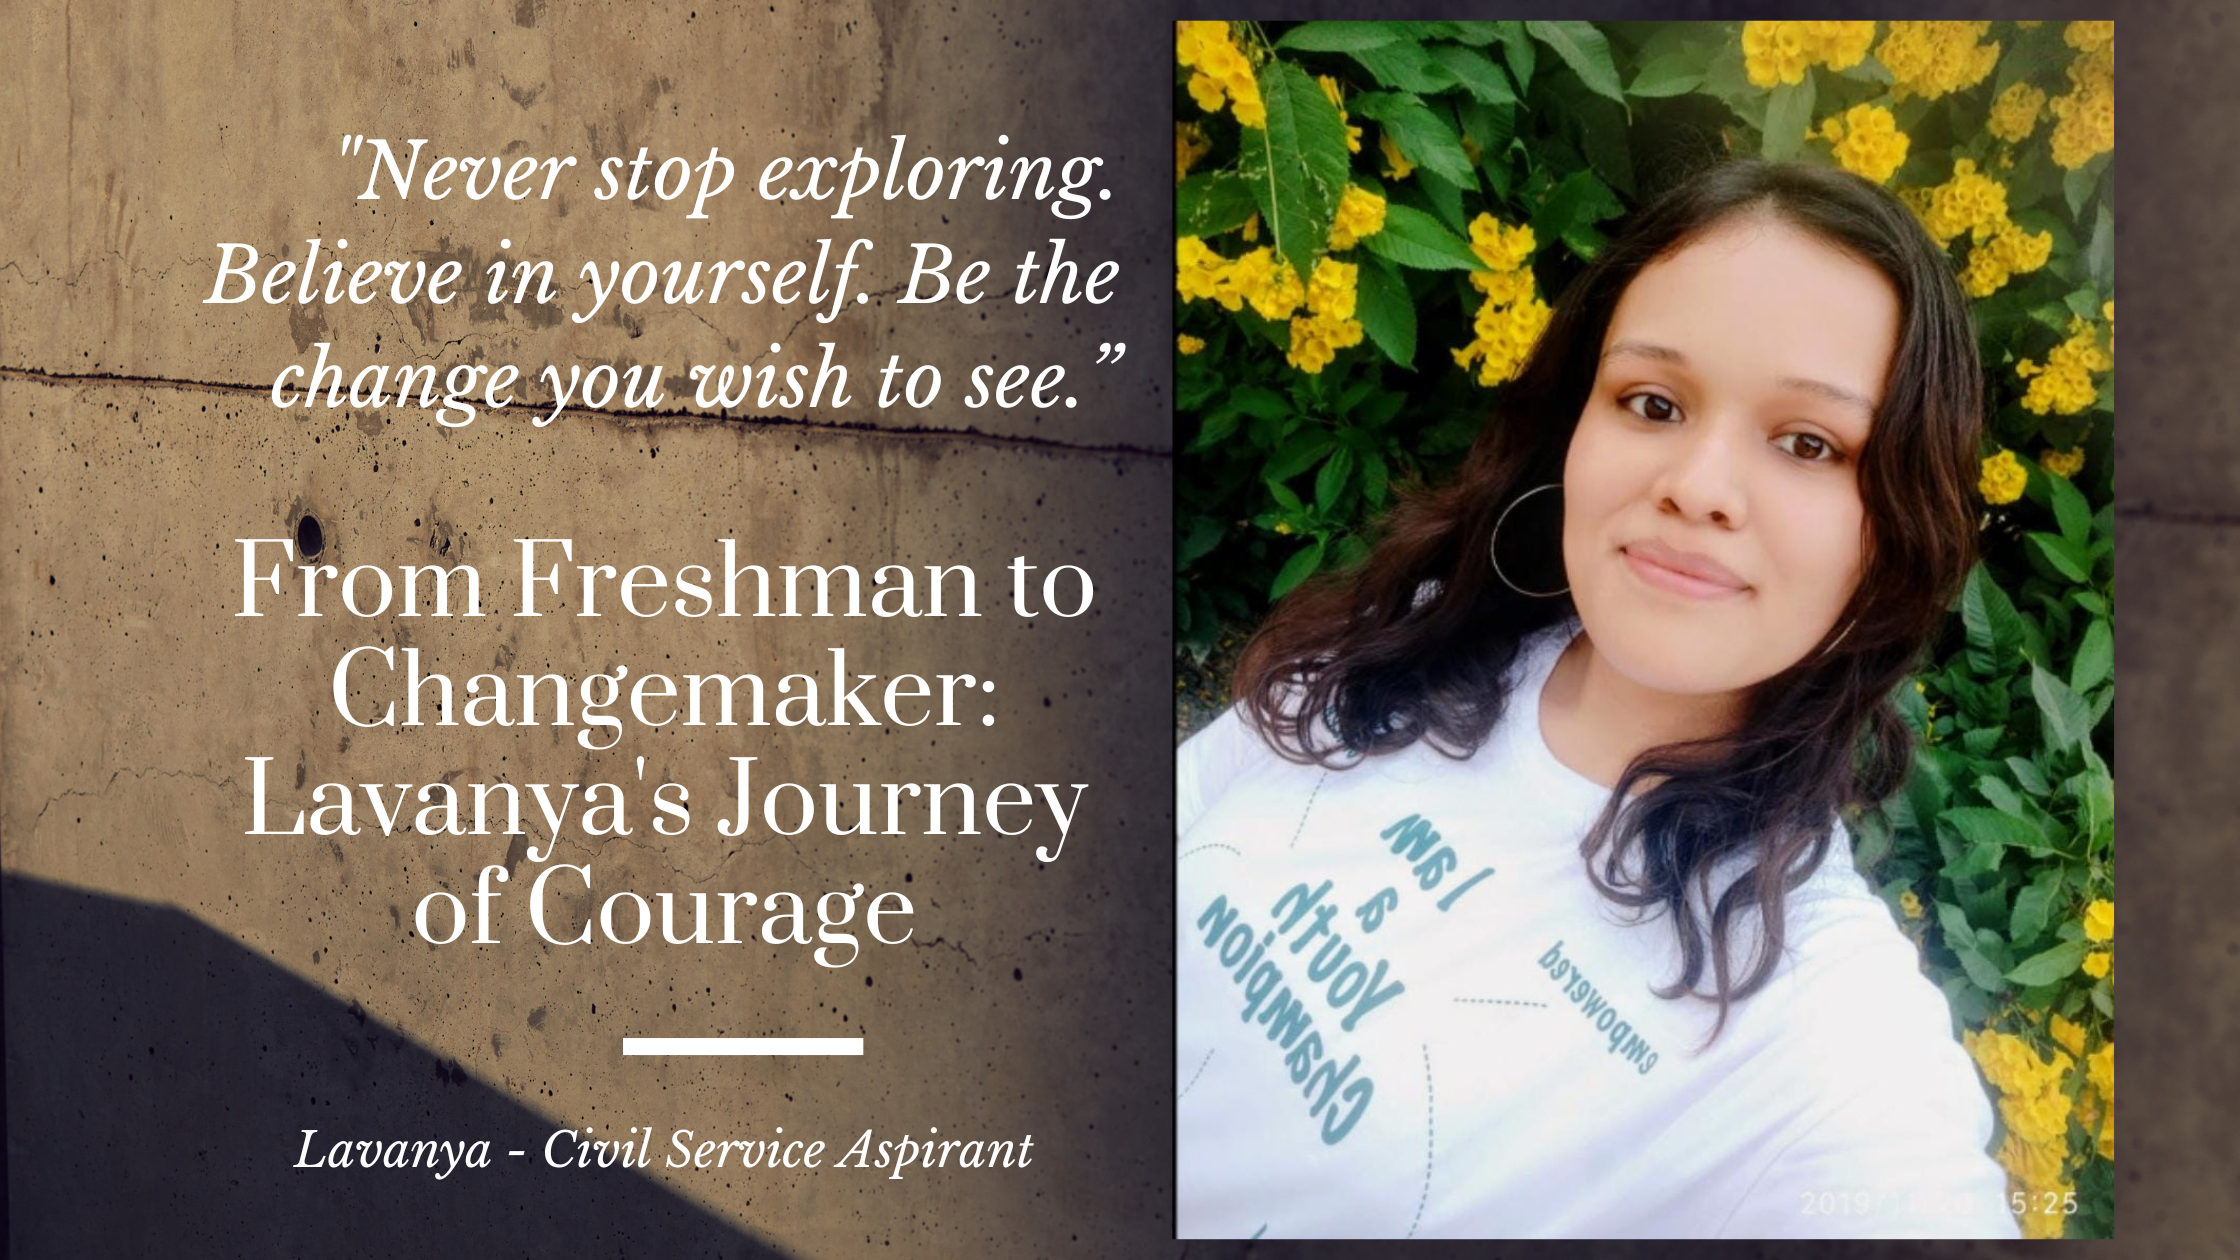 From Freshman to Changemaker: Lavanya’s Journey of Courage